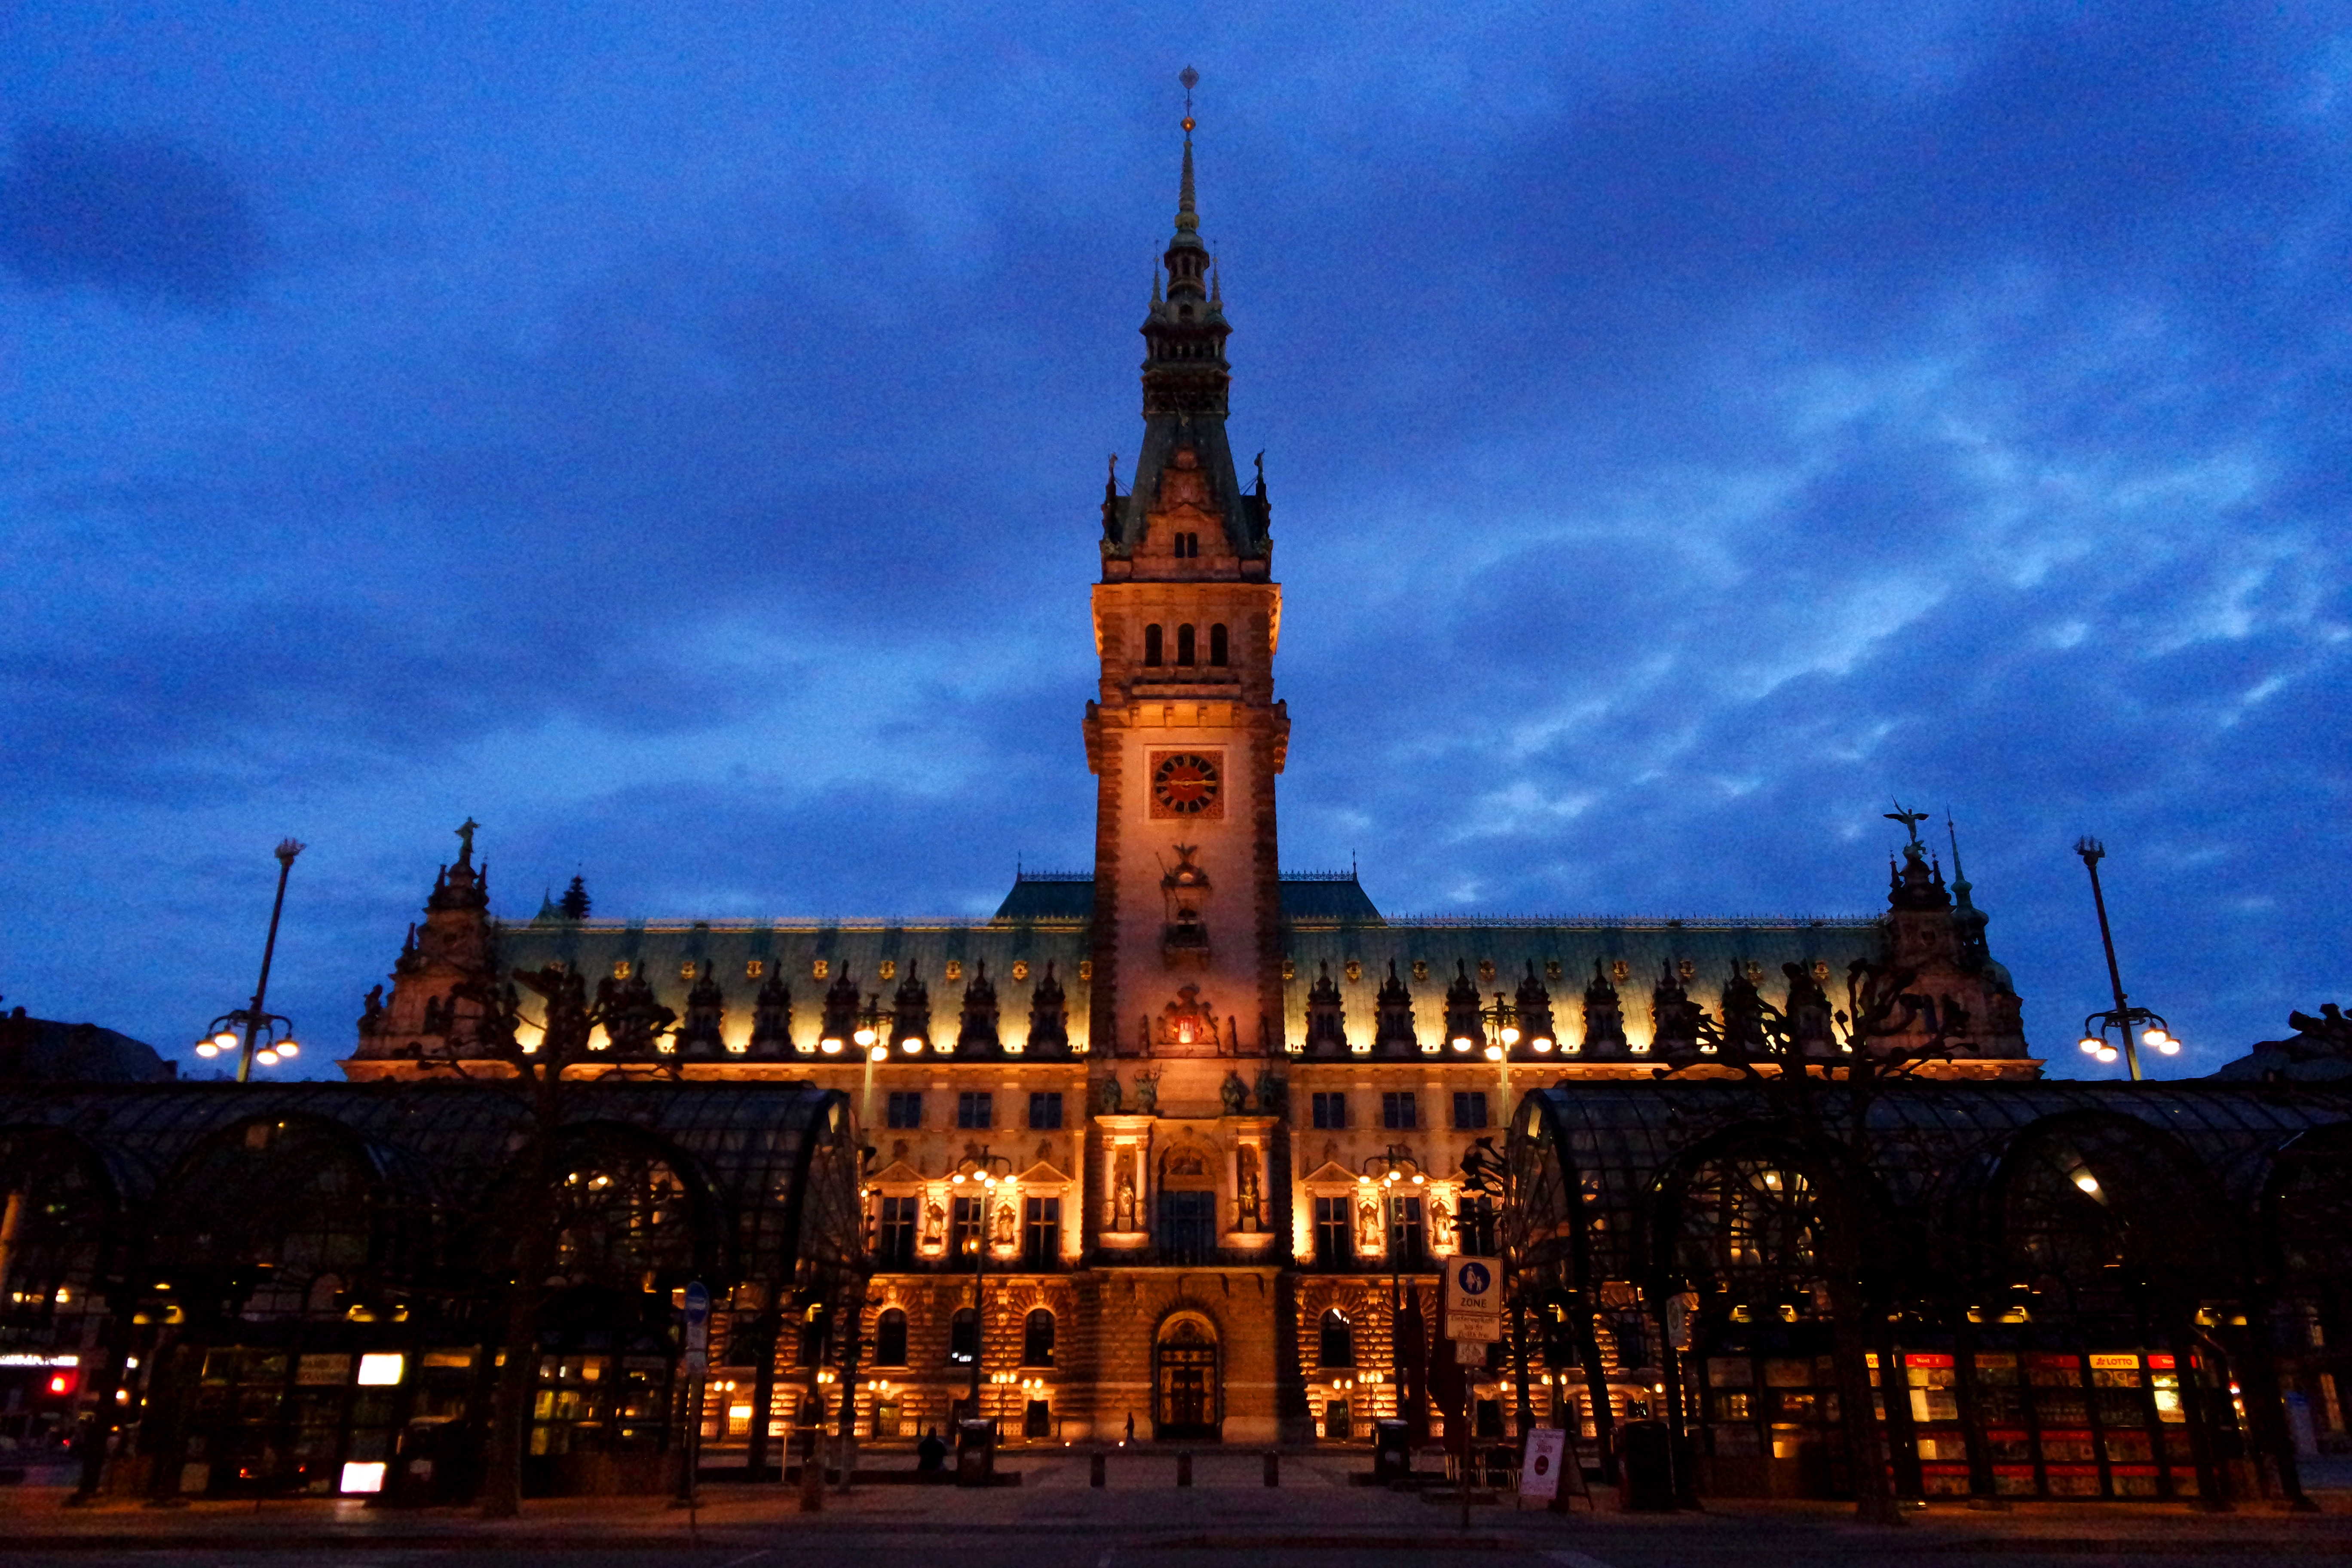 O belo edifício da Prefeitura de Hamburgo ao anoitecer